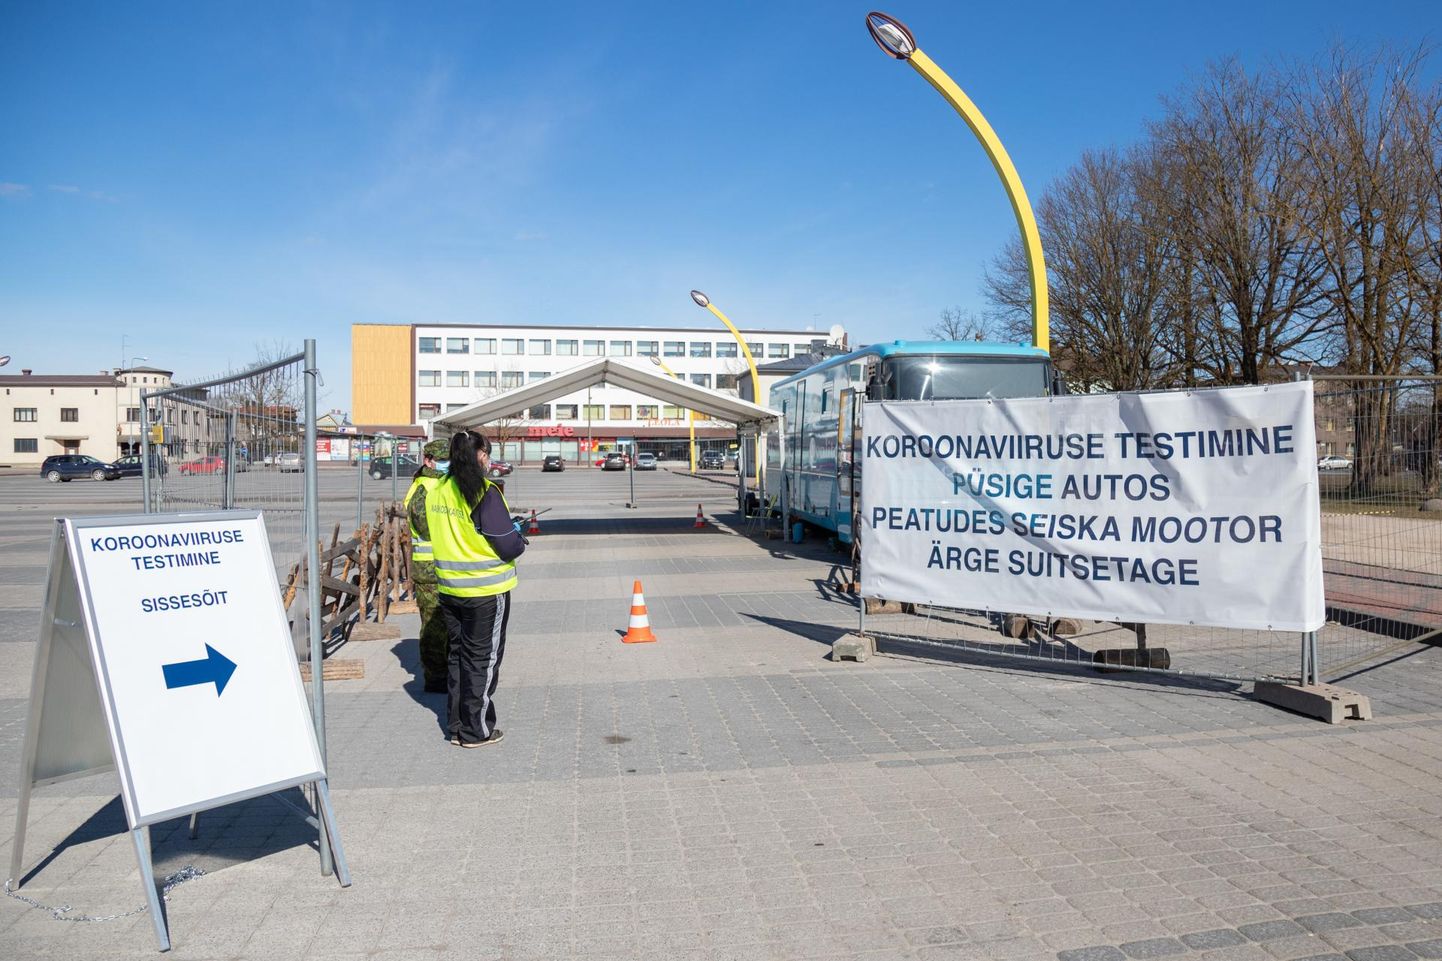 Viljandis saab koroonaviiruse testi teha Viljandi turu parklas asuvas testimispunktis.
 